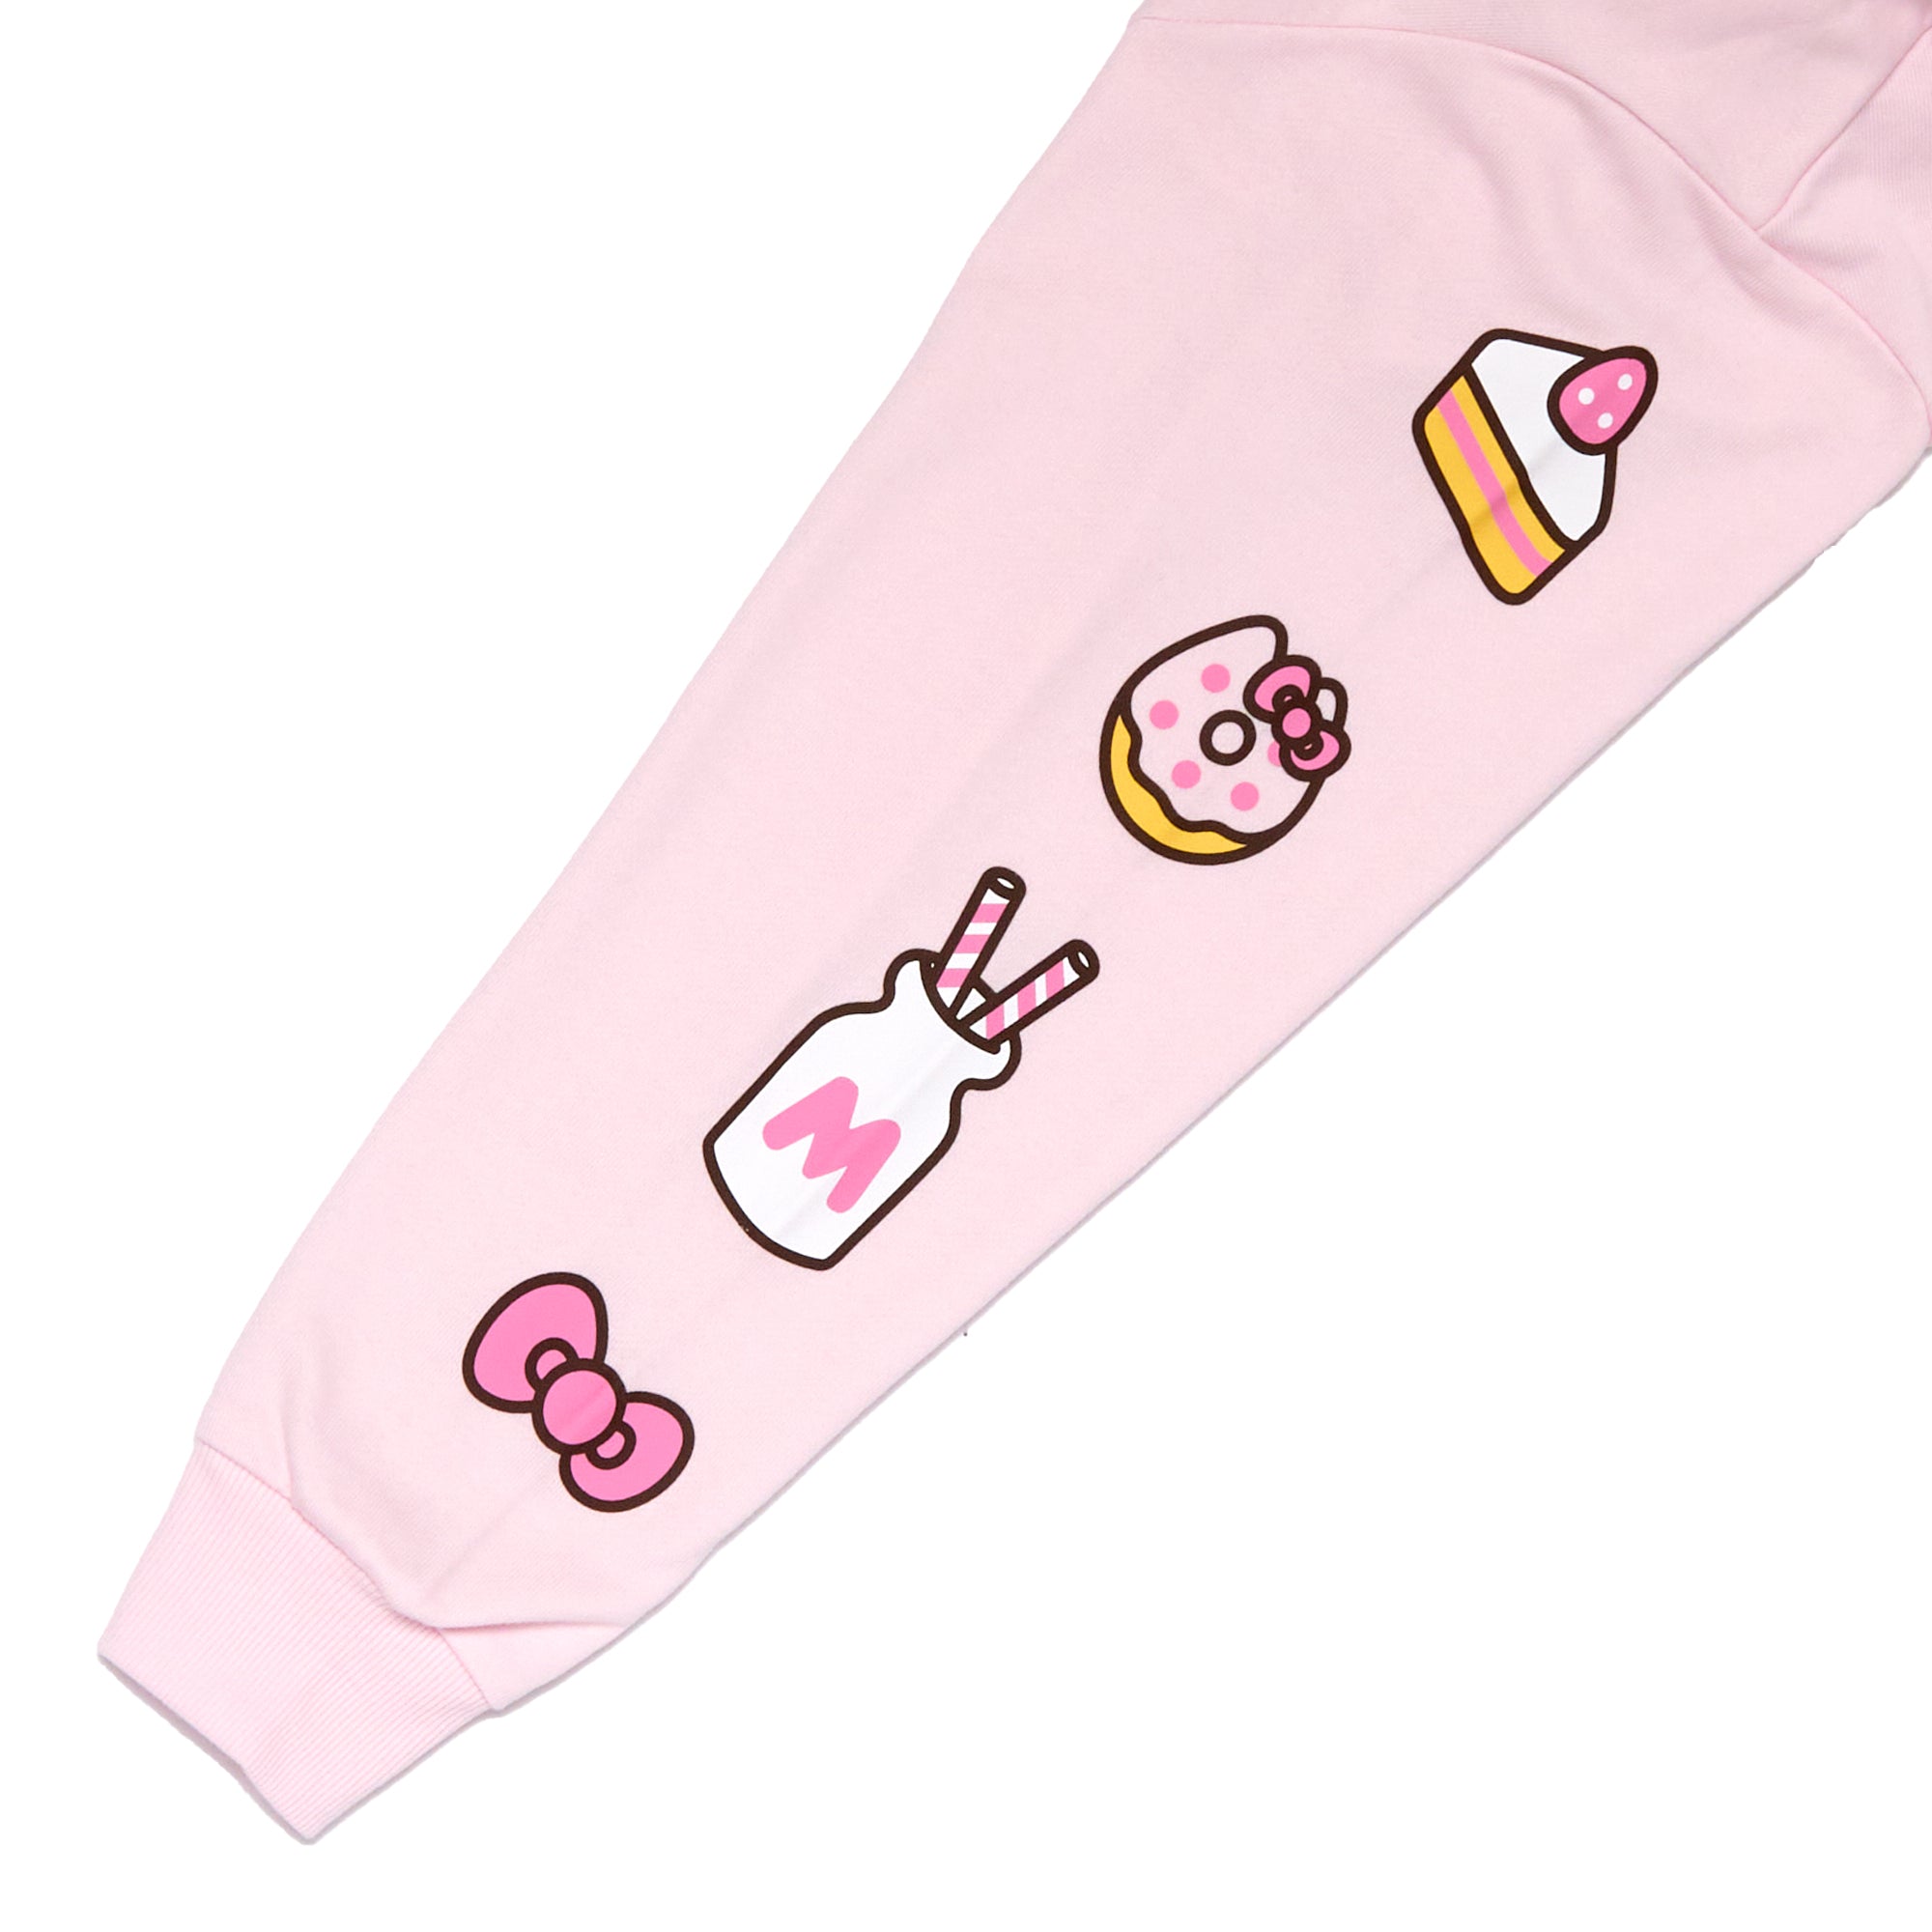 Hello Kitty X Pusheen Duo Boyfriend Fit Girls T-Shirt